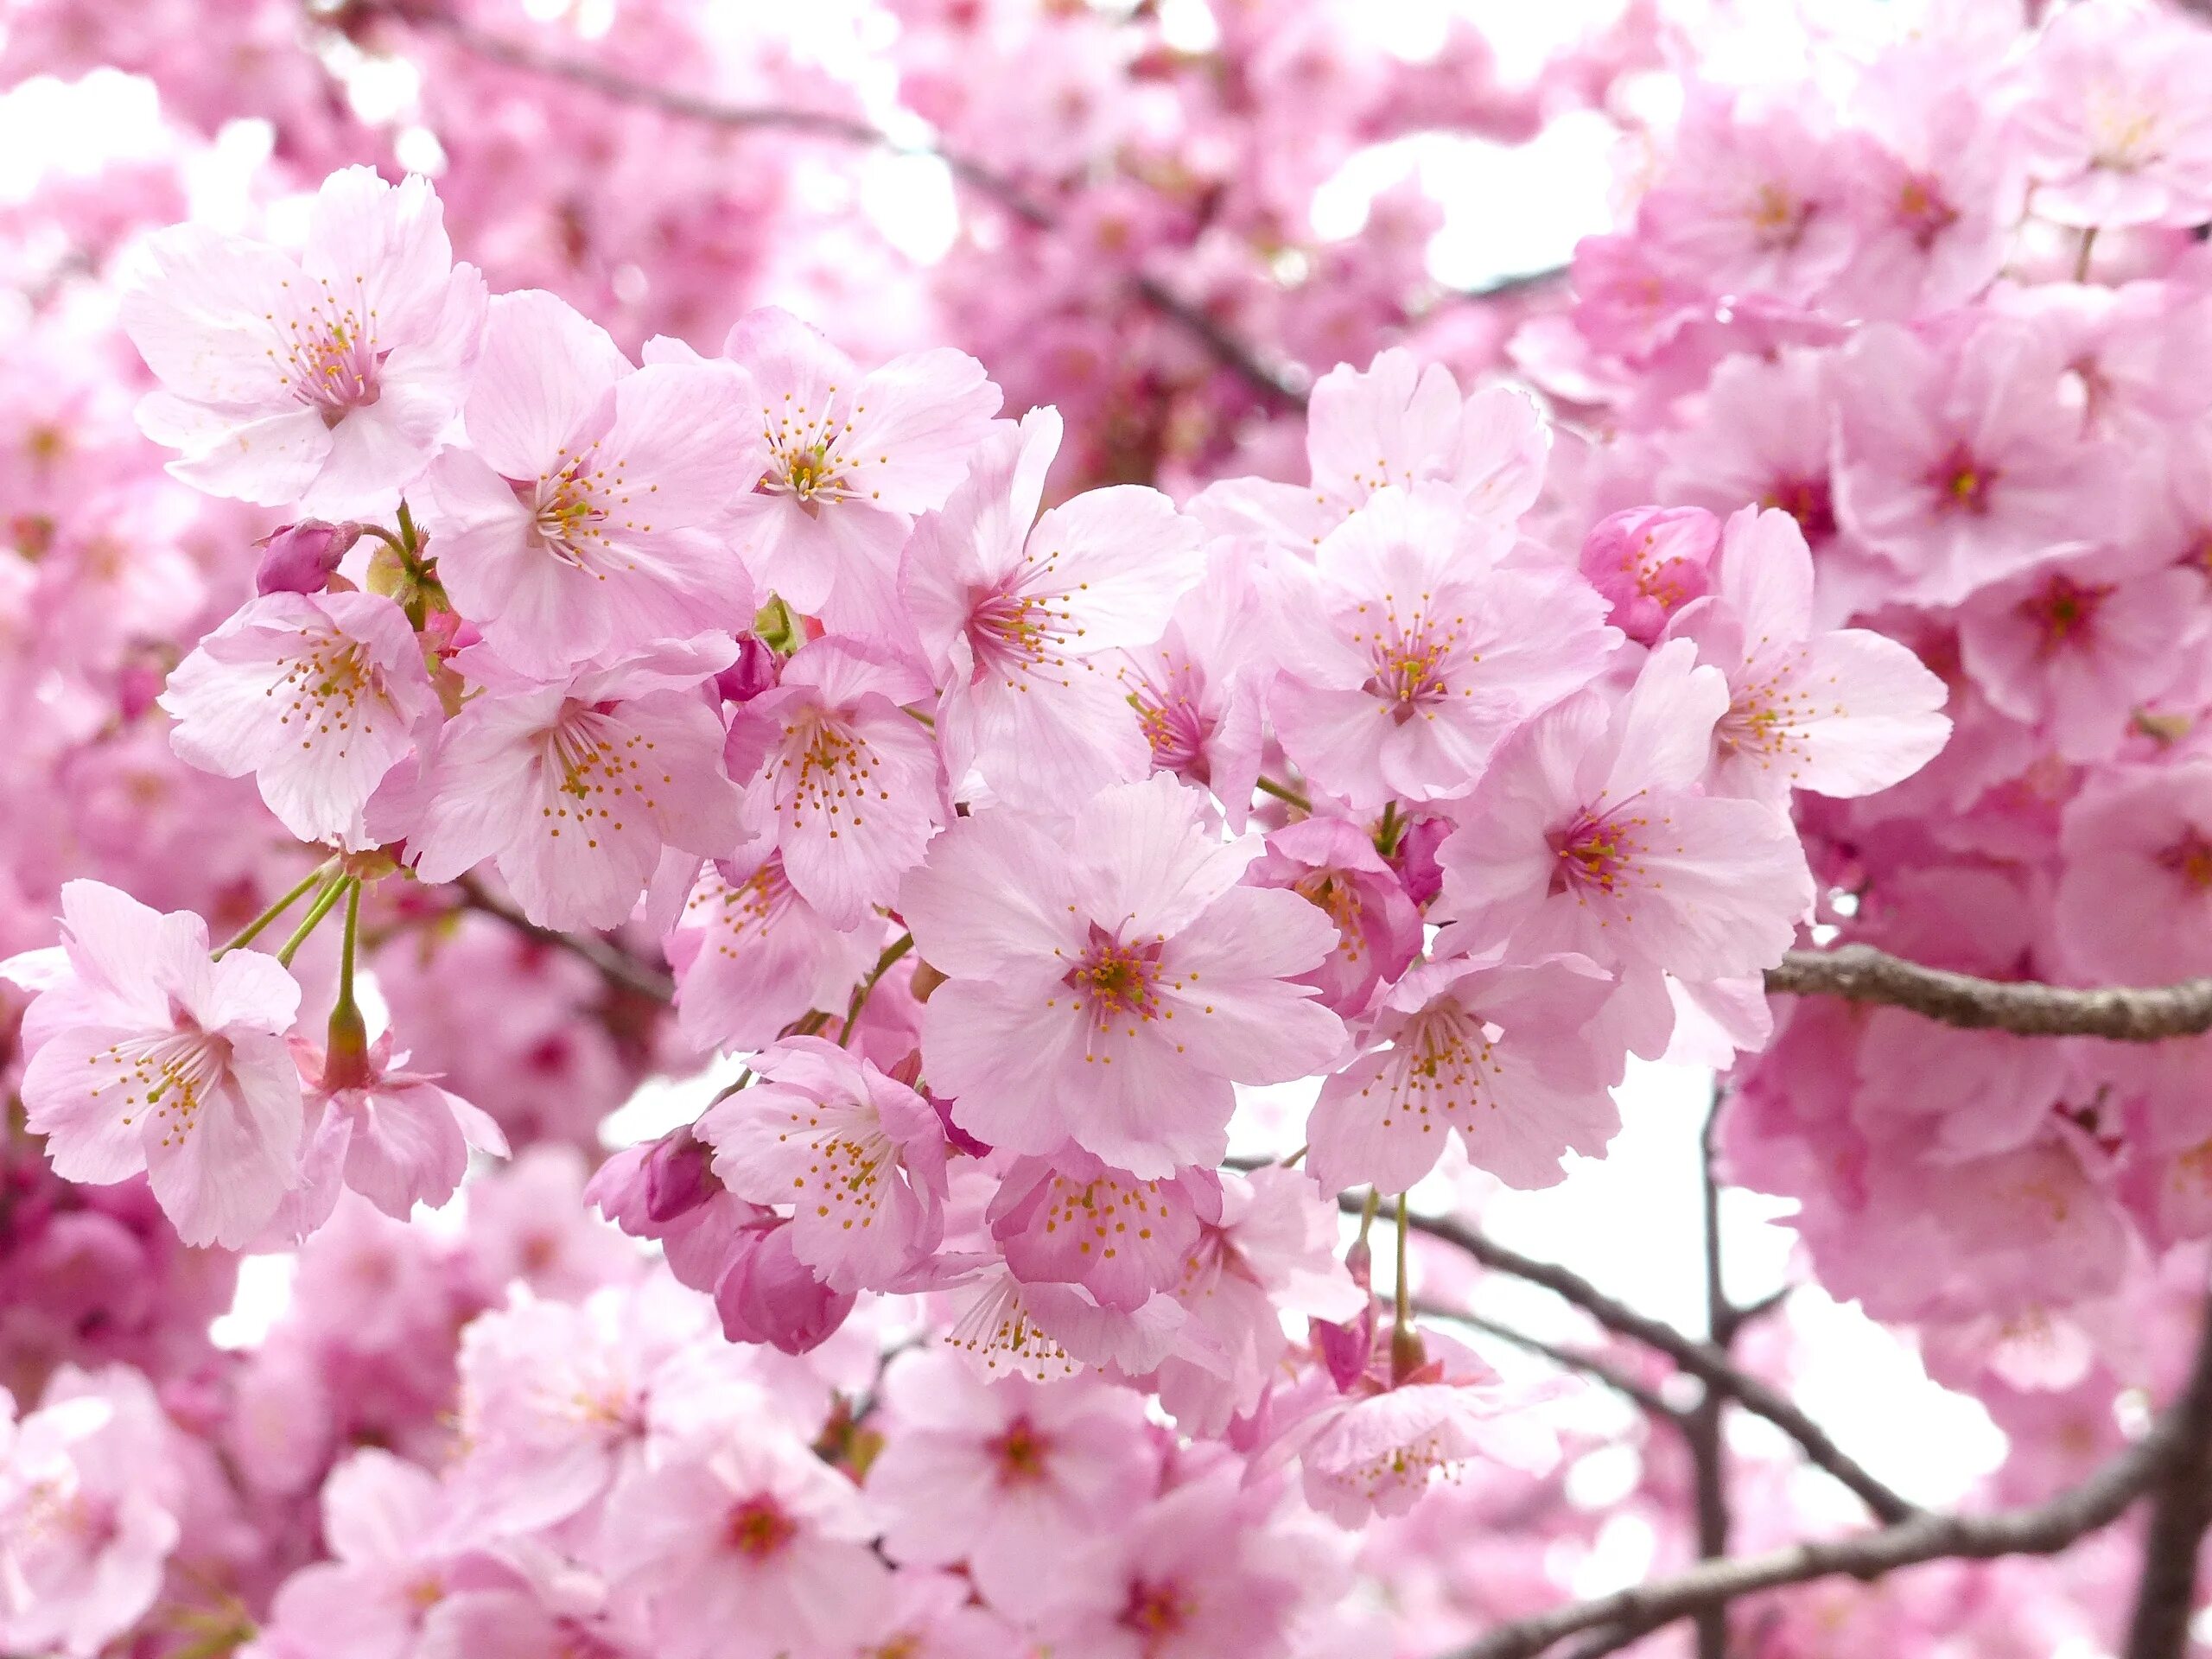 New blossom. Черри блоссом дерево. Сакура черри блоссом дерево. Сакура японская вишня. Вишня черри блоссом.